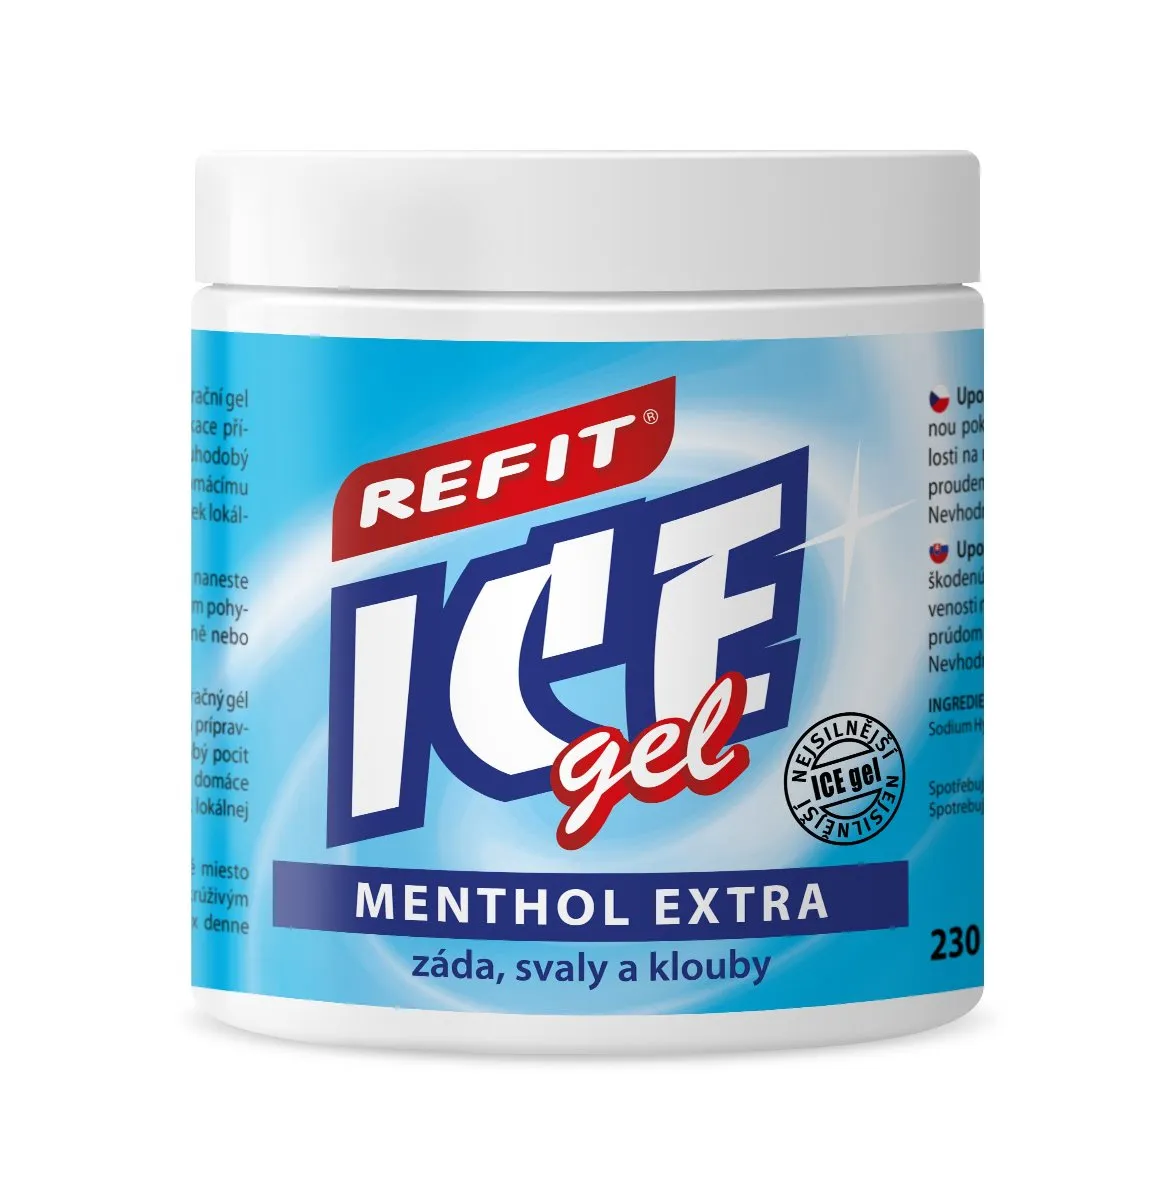 Refit ice Masážní gel s mentholem